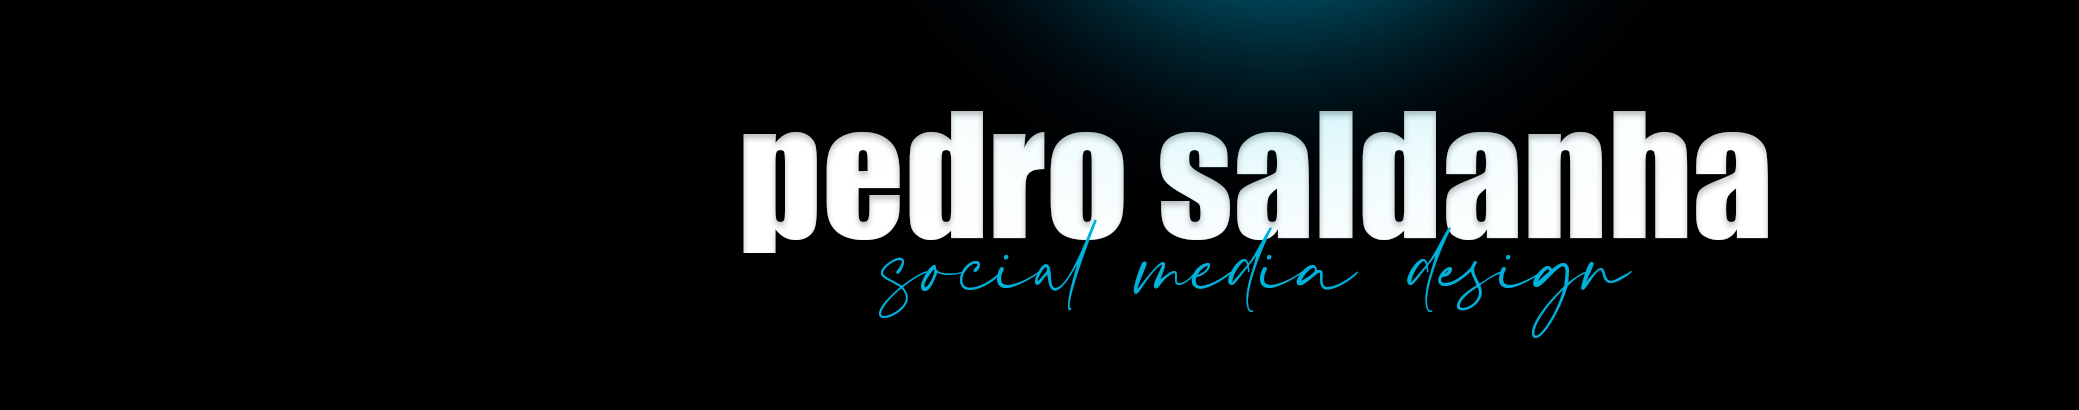 Pedro Saldanha's profile banner